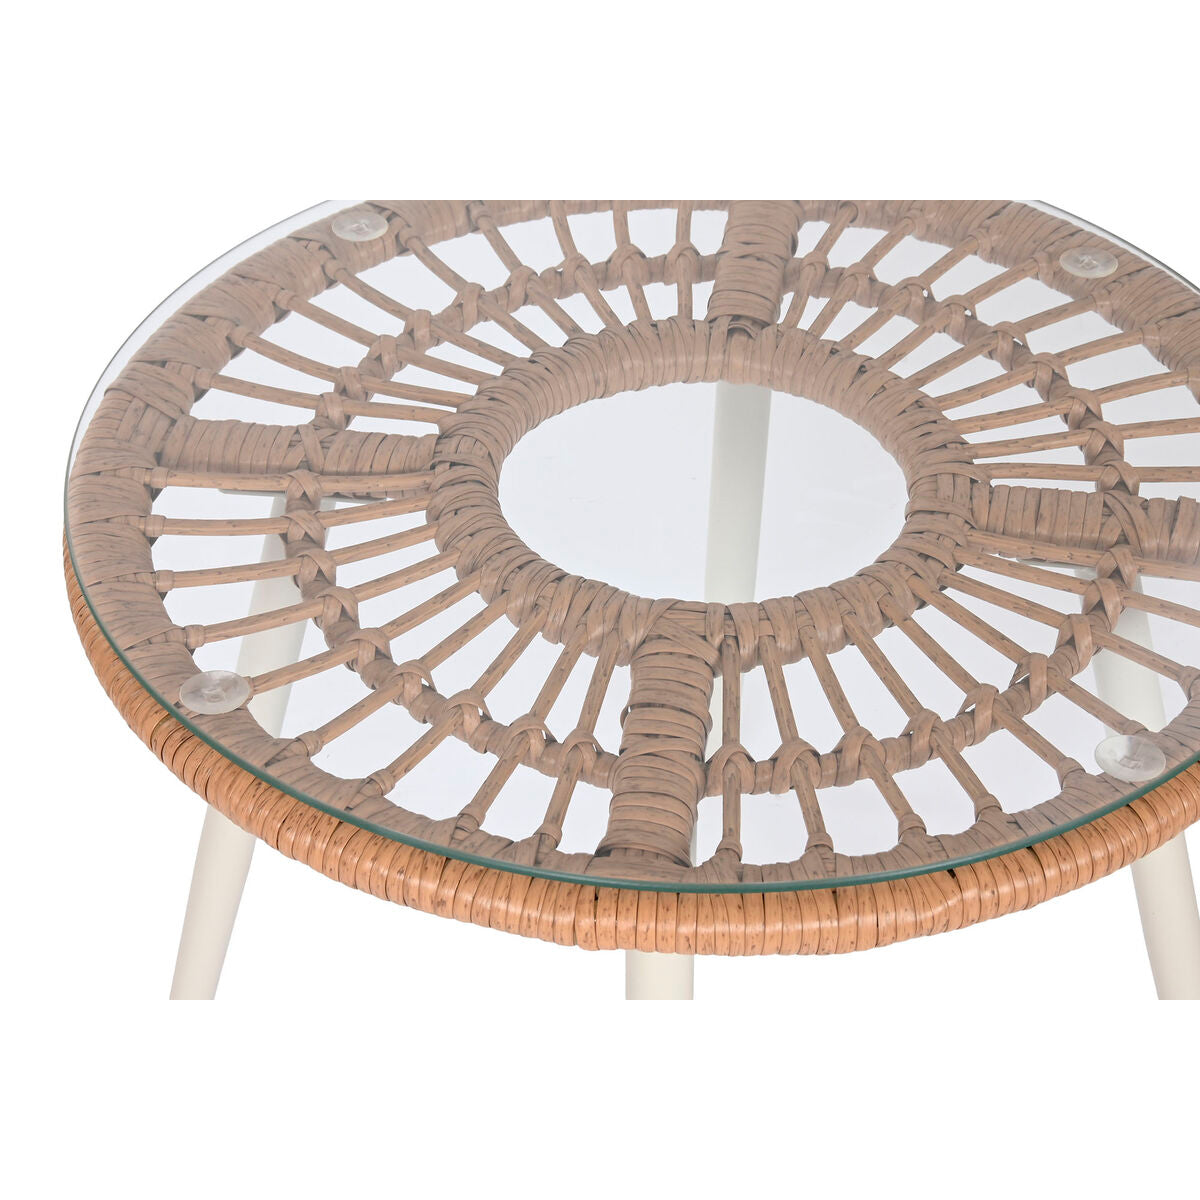 Tisch mit 2 Sesseln Home ESPRIT Weiß Beige Grau Metall Kristall Synthetischer Rattan 55 x 55 x 47 cm